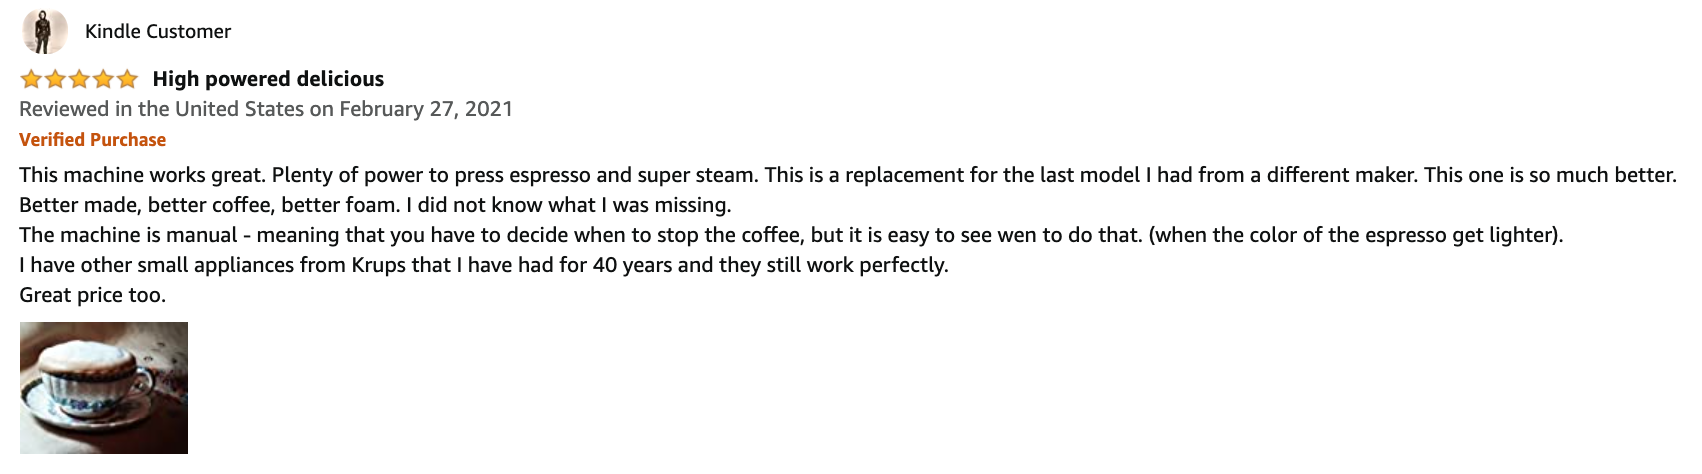 krups espresso machine review 4